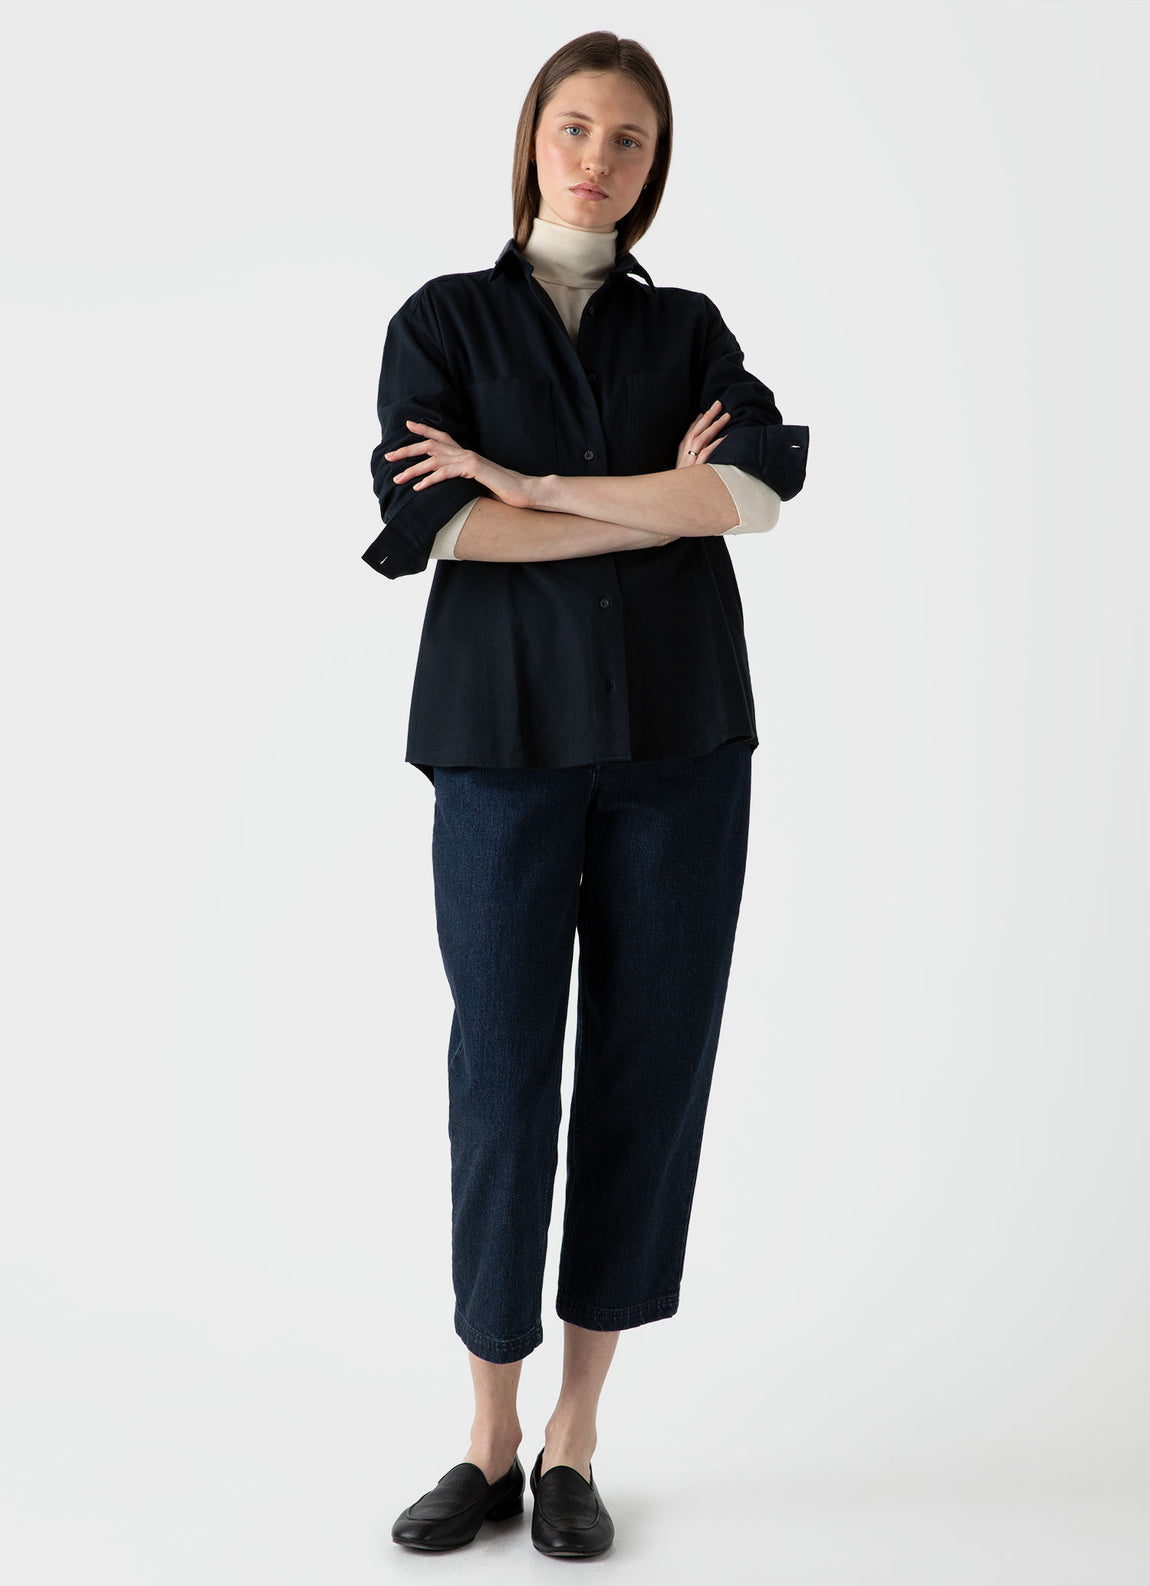 Women's Oversized Flannel Shirt in Black | Sunspel